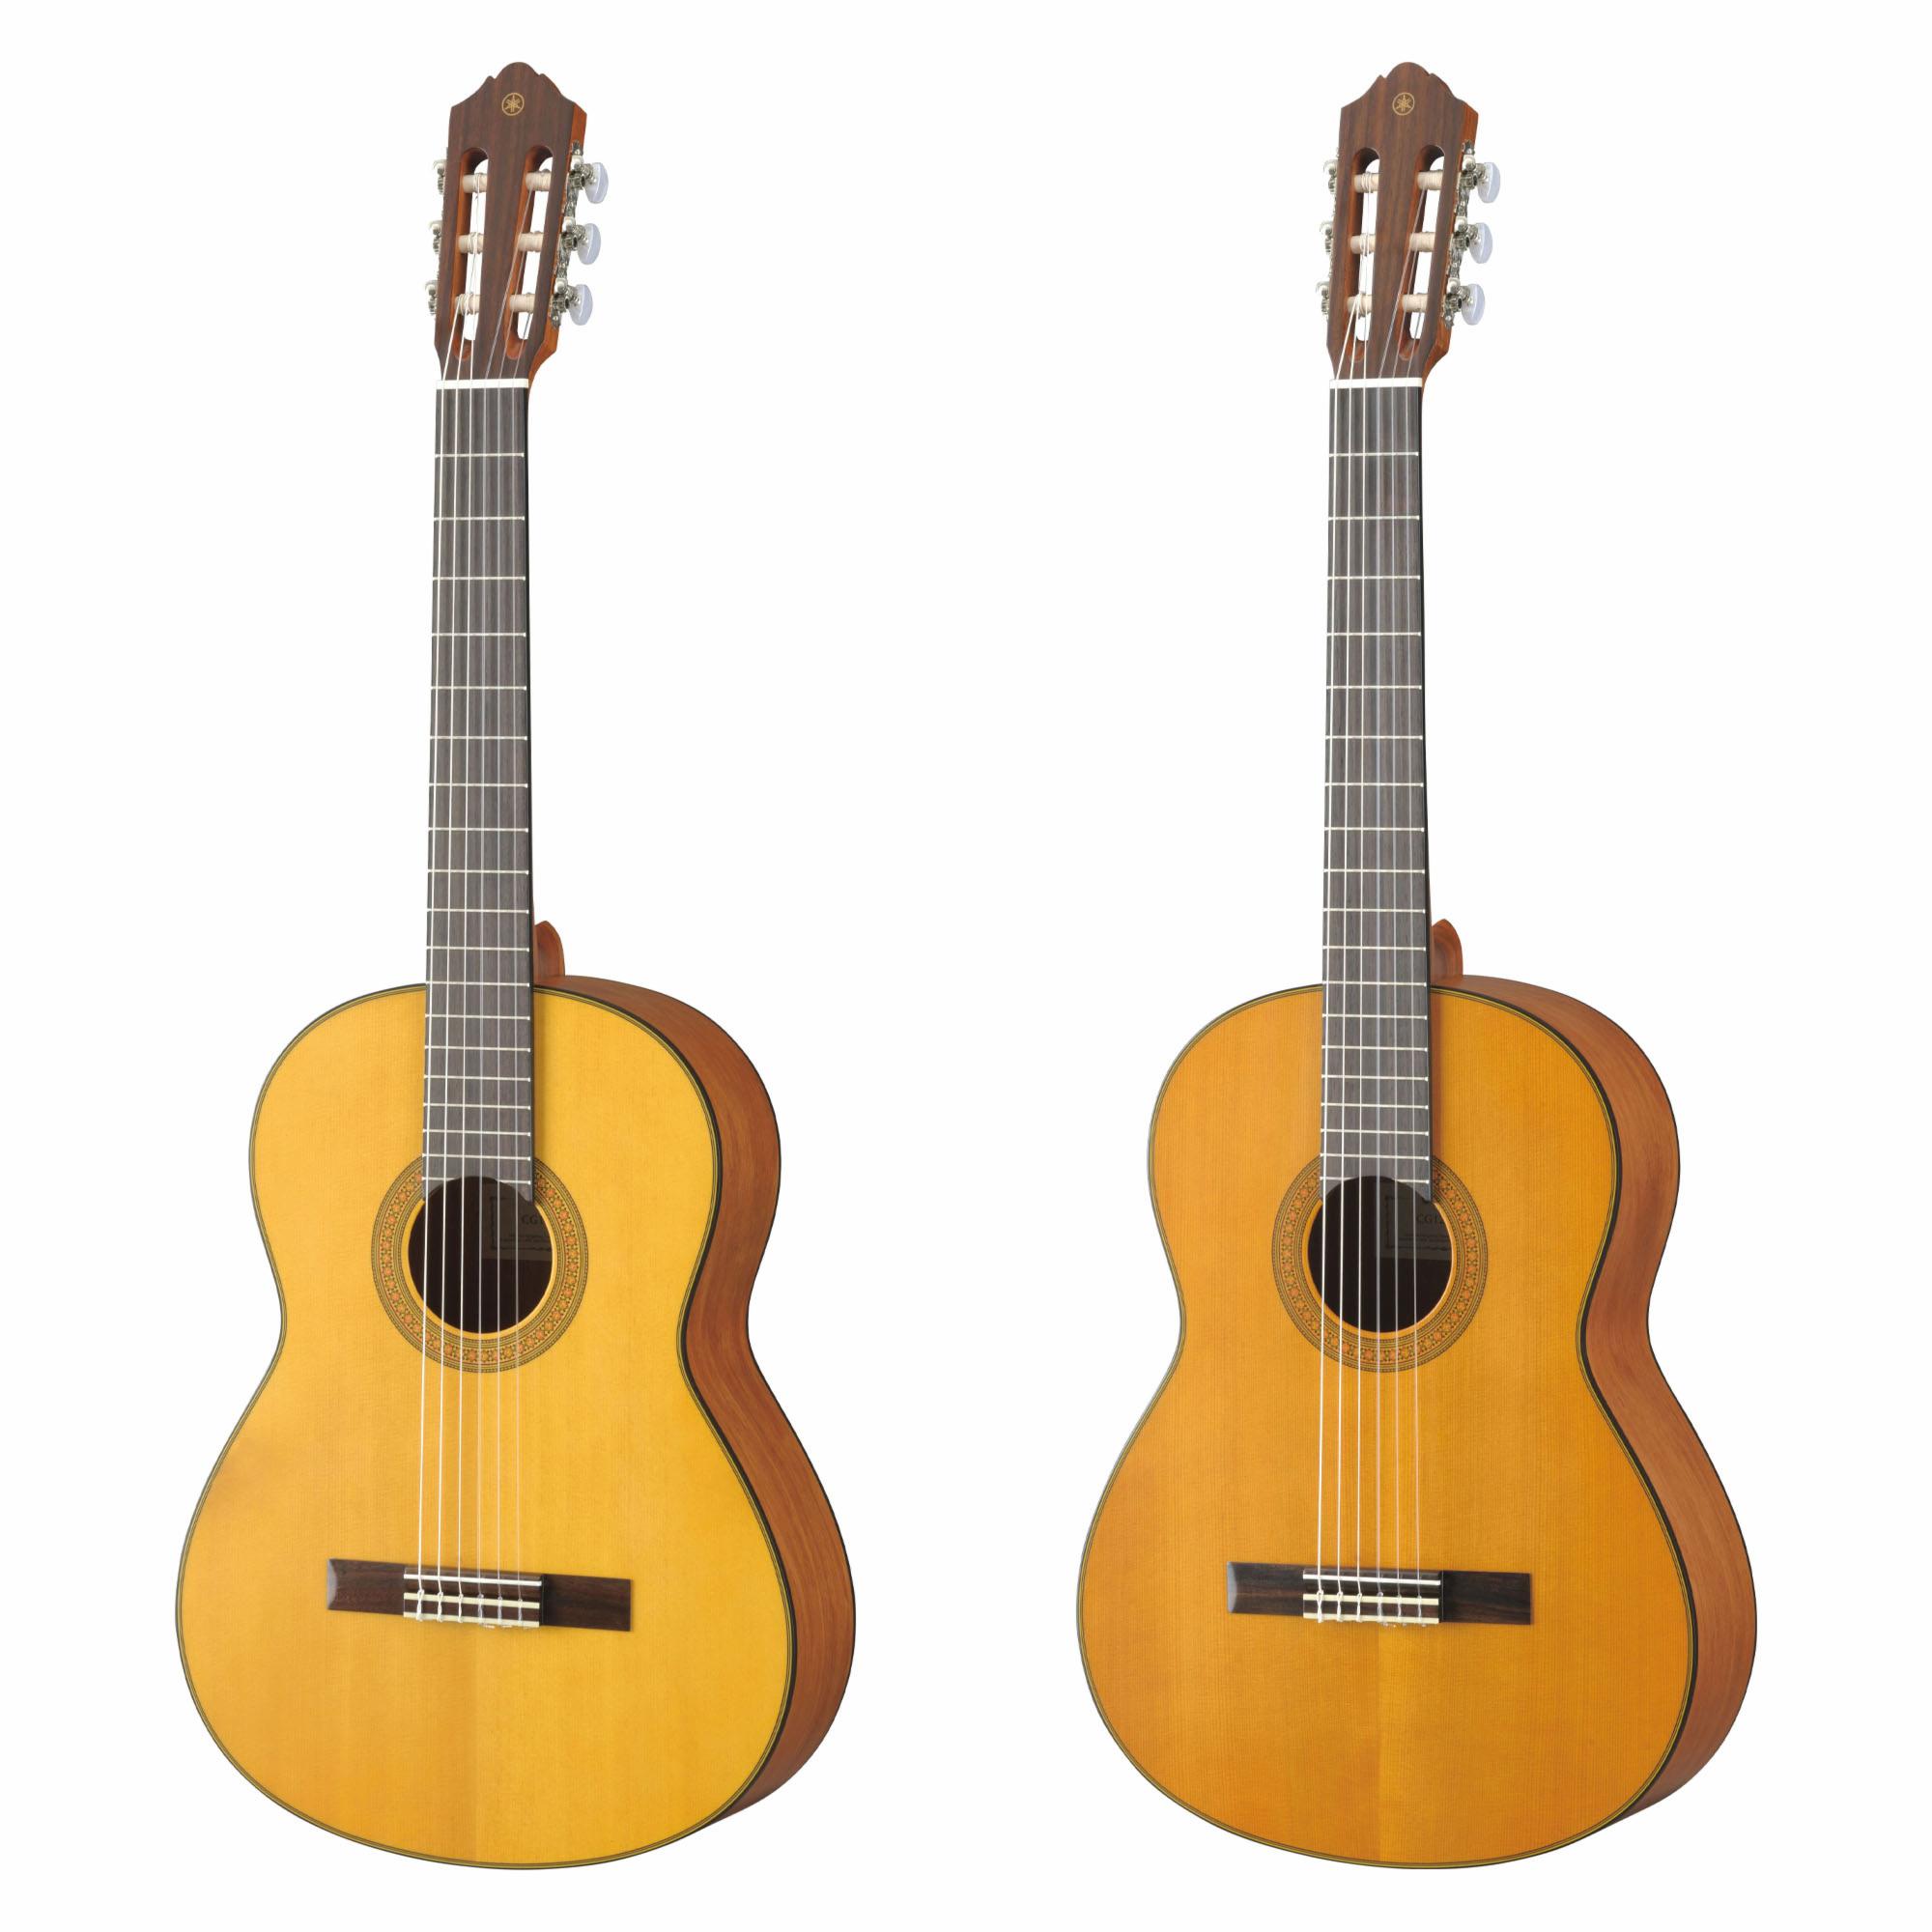 Yamaha Concert Series (CG122) Classical Guitar